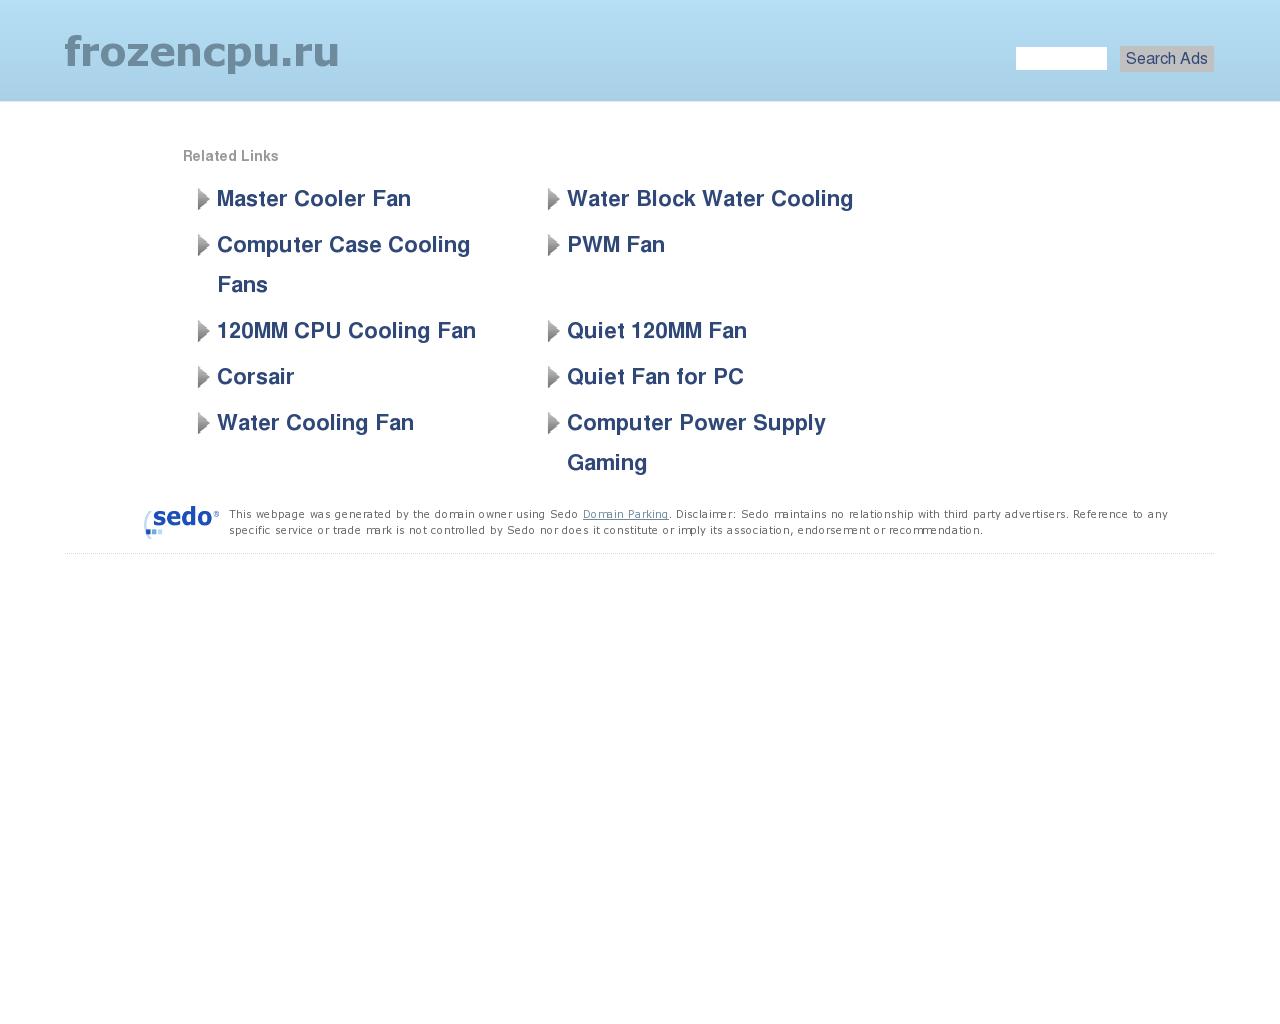 Изображение сайта frozencpu.ru в разрешении 1280x1024